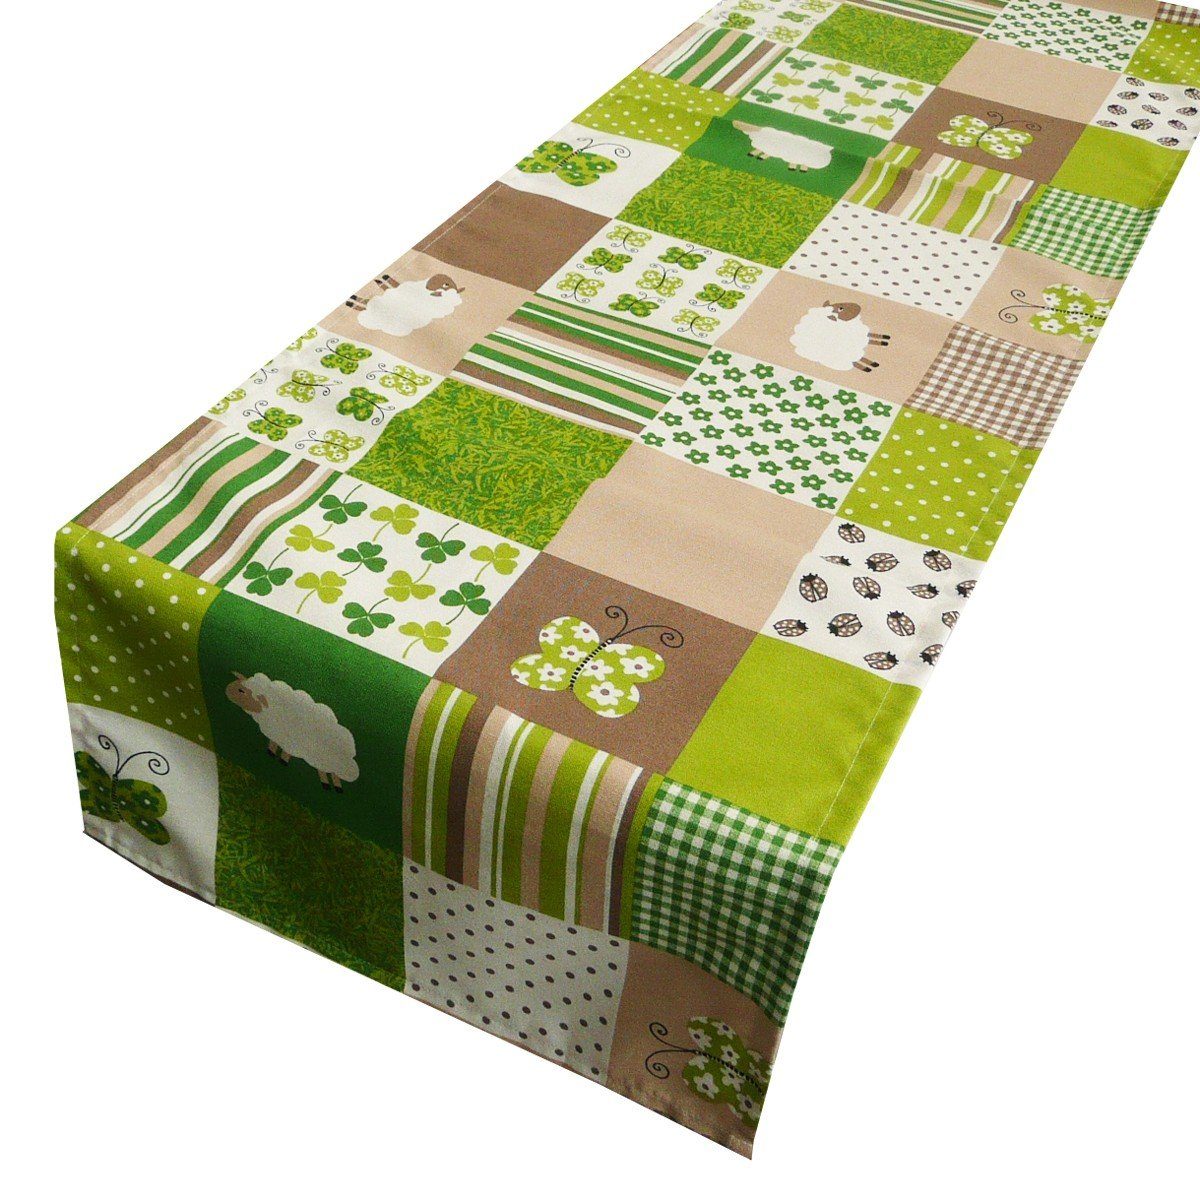 karo Leben LEBEN. Klee Tischläufer Tischläufer grün Schafe SCHÖNER handmade 40x160cm, Schöner